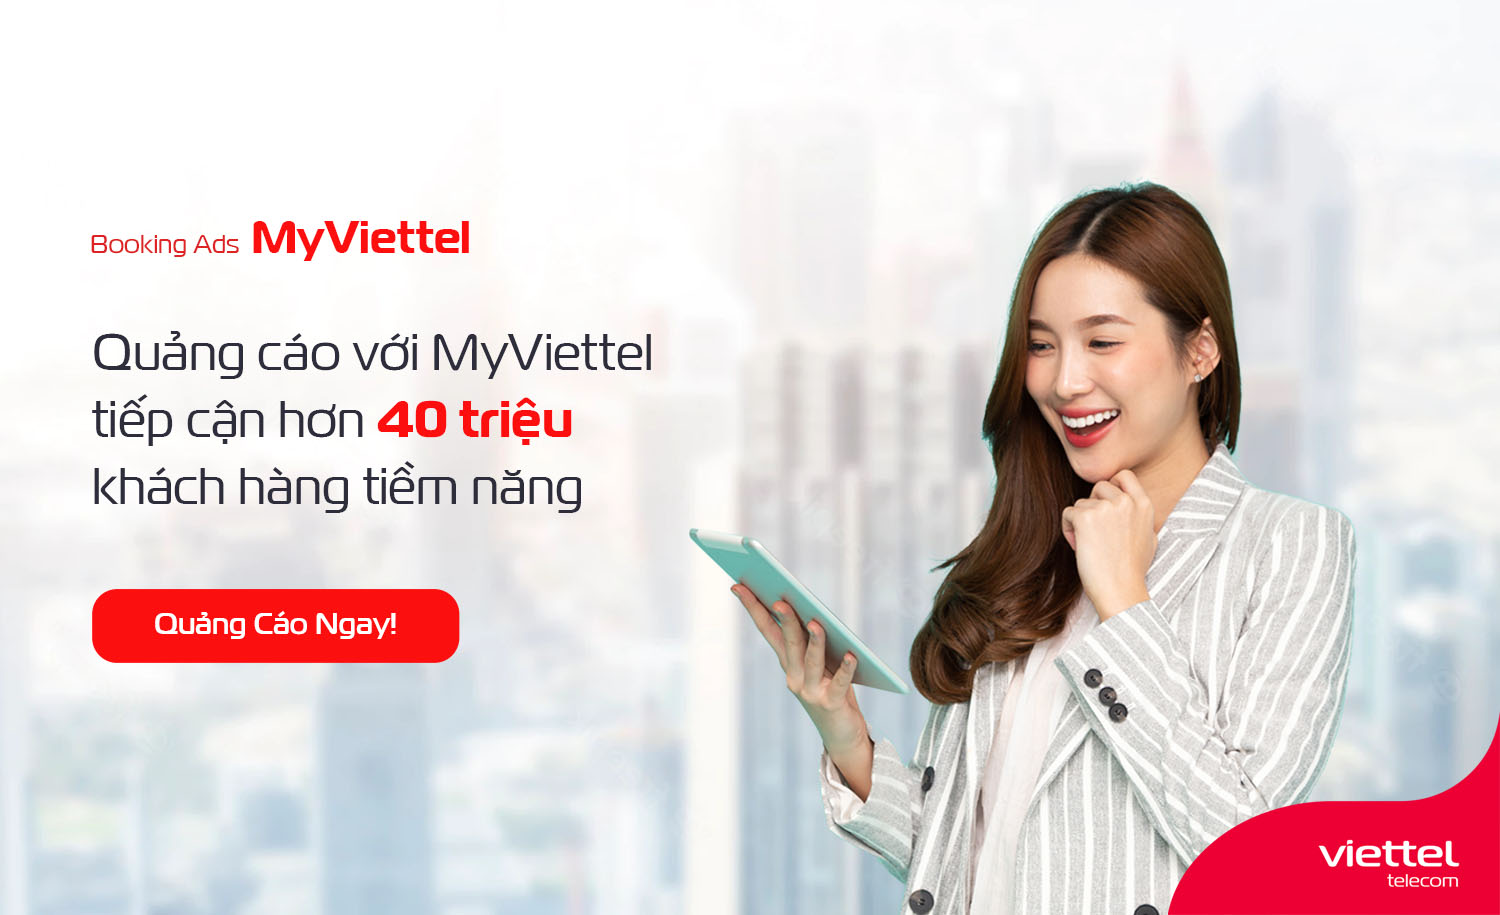 Viettel Telecom là nhà cung cấp dịch vụ viễn thông uy tín, mang đến cho khách hàng những giải pháp kết nối thông minh và nhanh chóng. Hãy xem hình về Viettel Telecom để tìm hiểu thêm về những sản phẩm và dịch vụ tuyệt vời mà họ cung cấp.